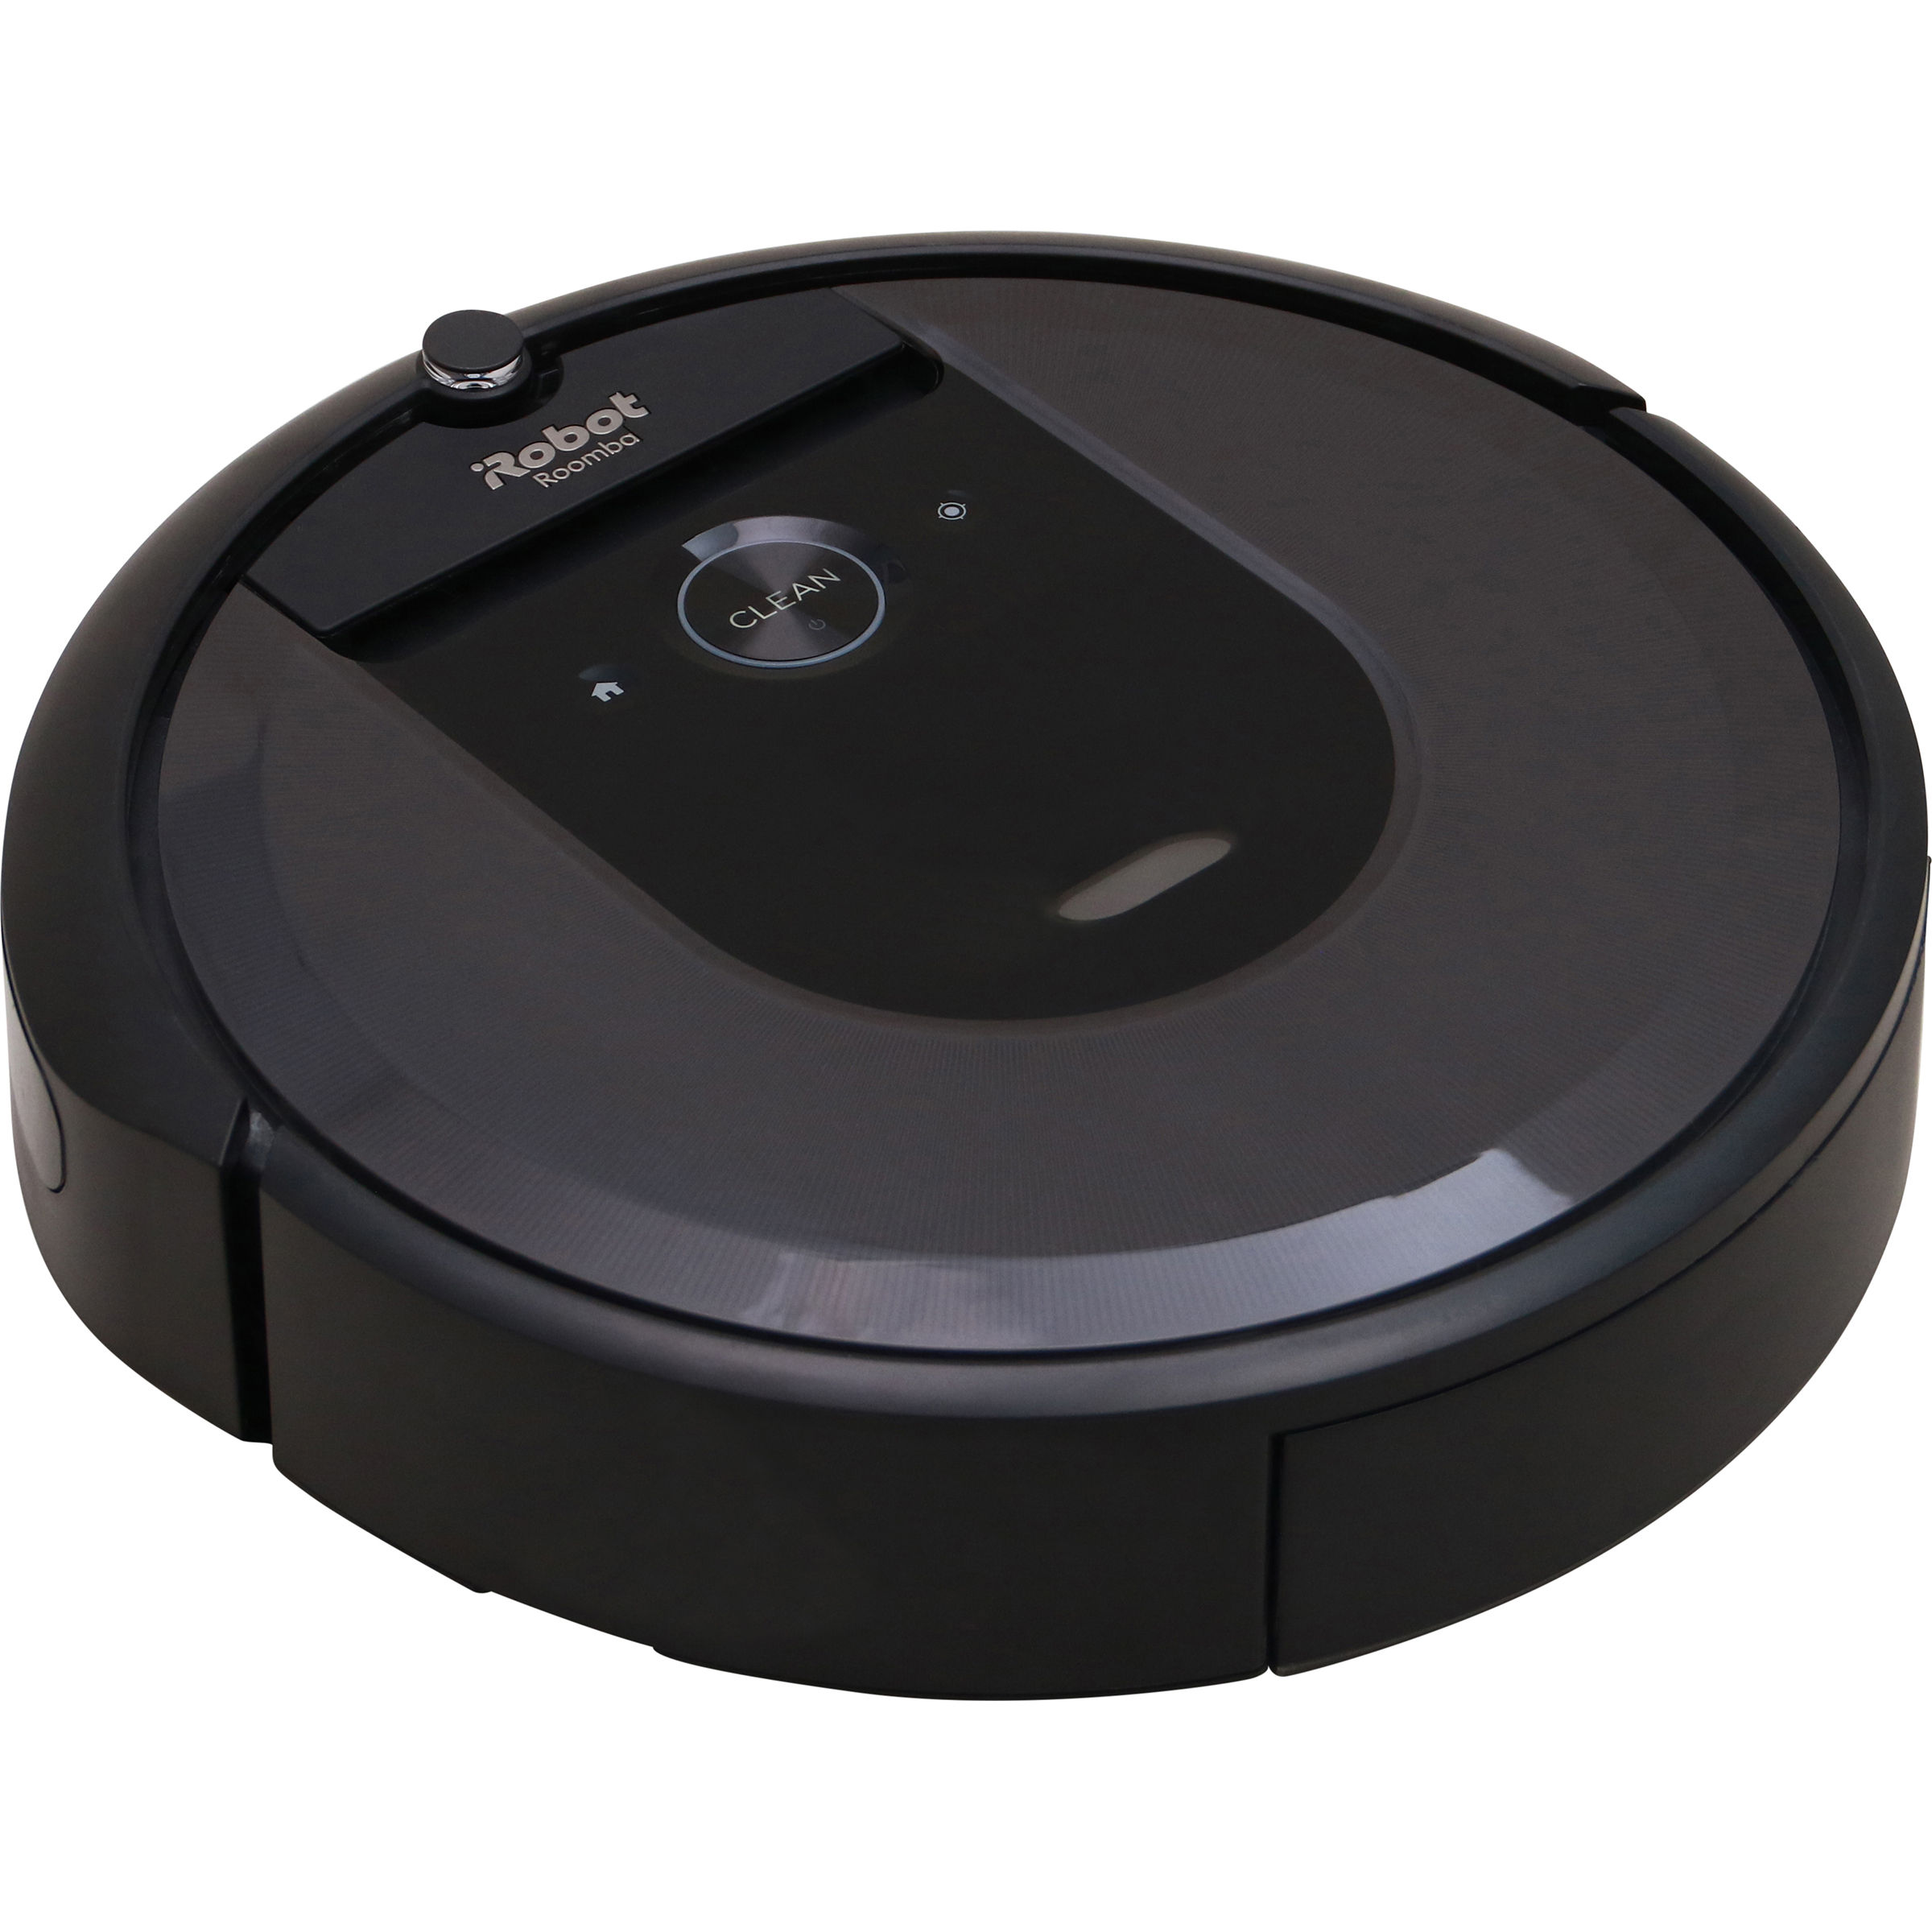 L'aspirateur robot Roomba i7+ est à un très bon prix pour les